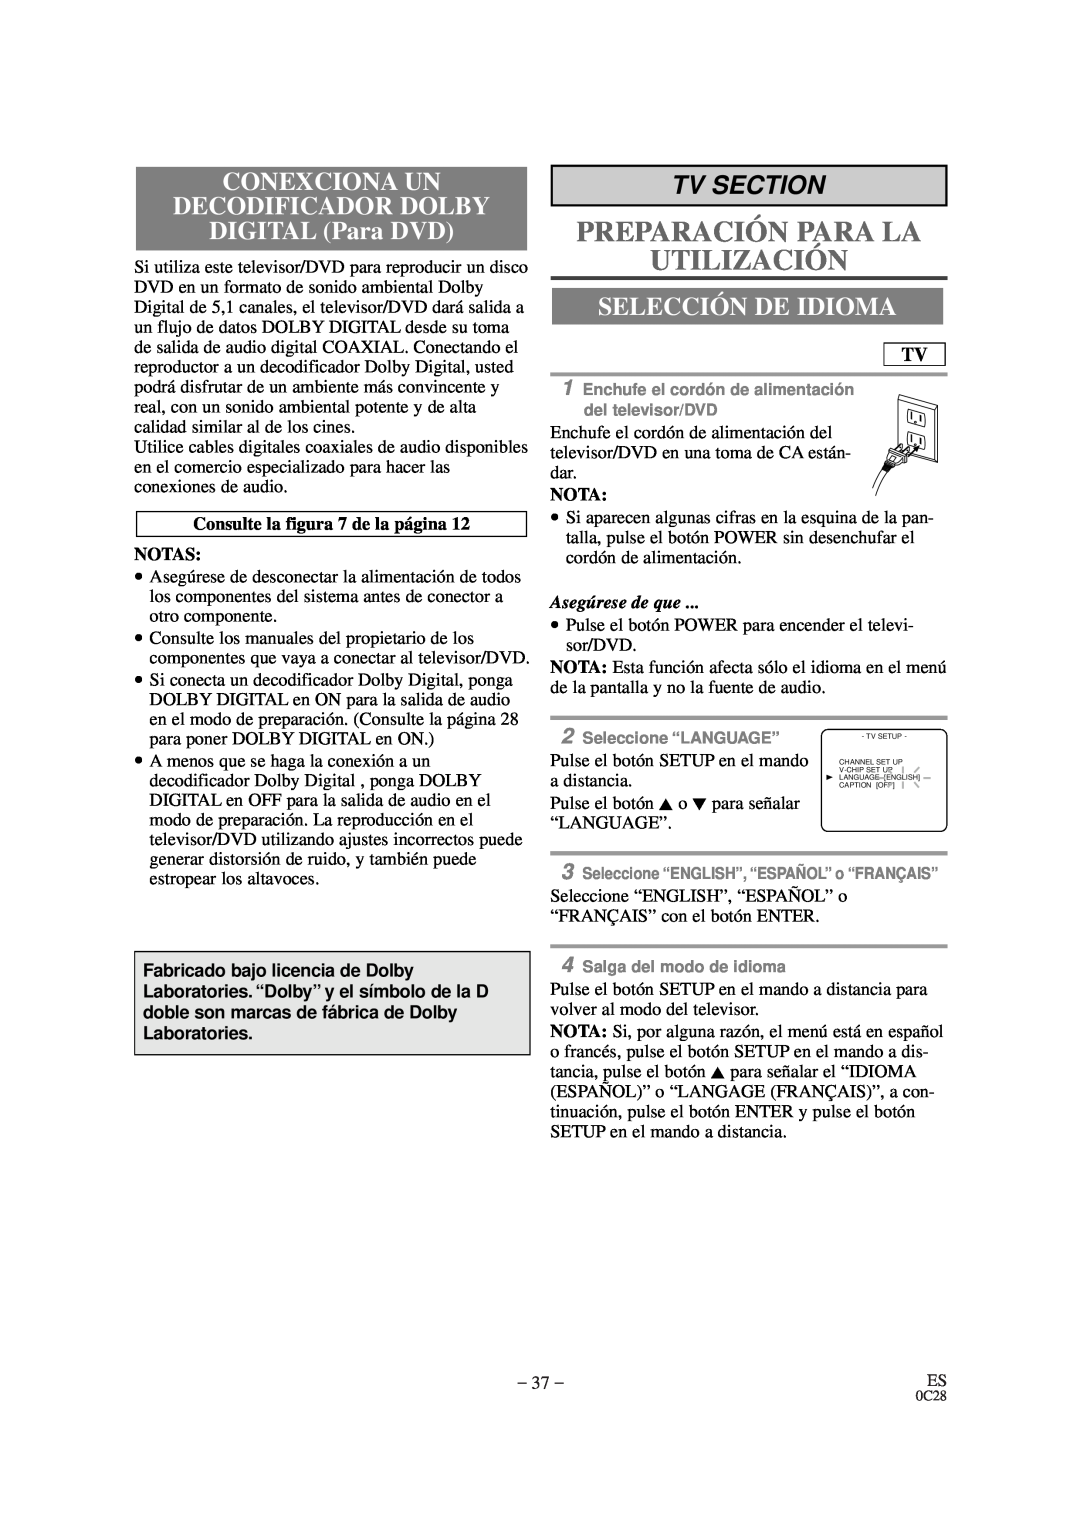 Sylvania SRTD420 CONEXCIONA UN DECODIFICADOR DOLBY DIGITAL Para DVD, Selección De Idioma, Preparación Para La Utilización 